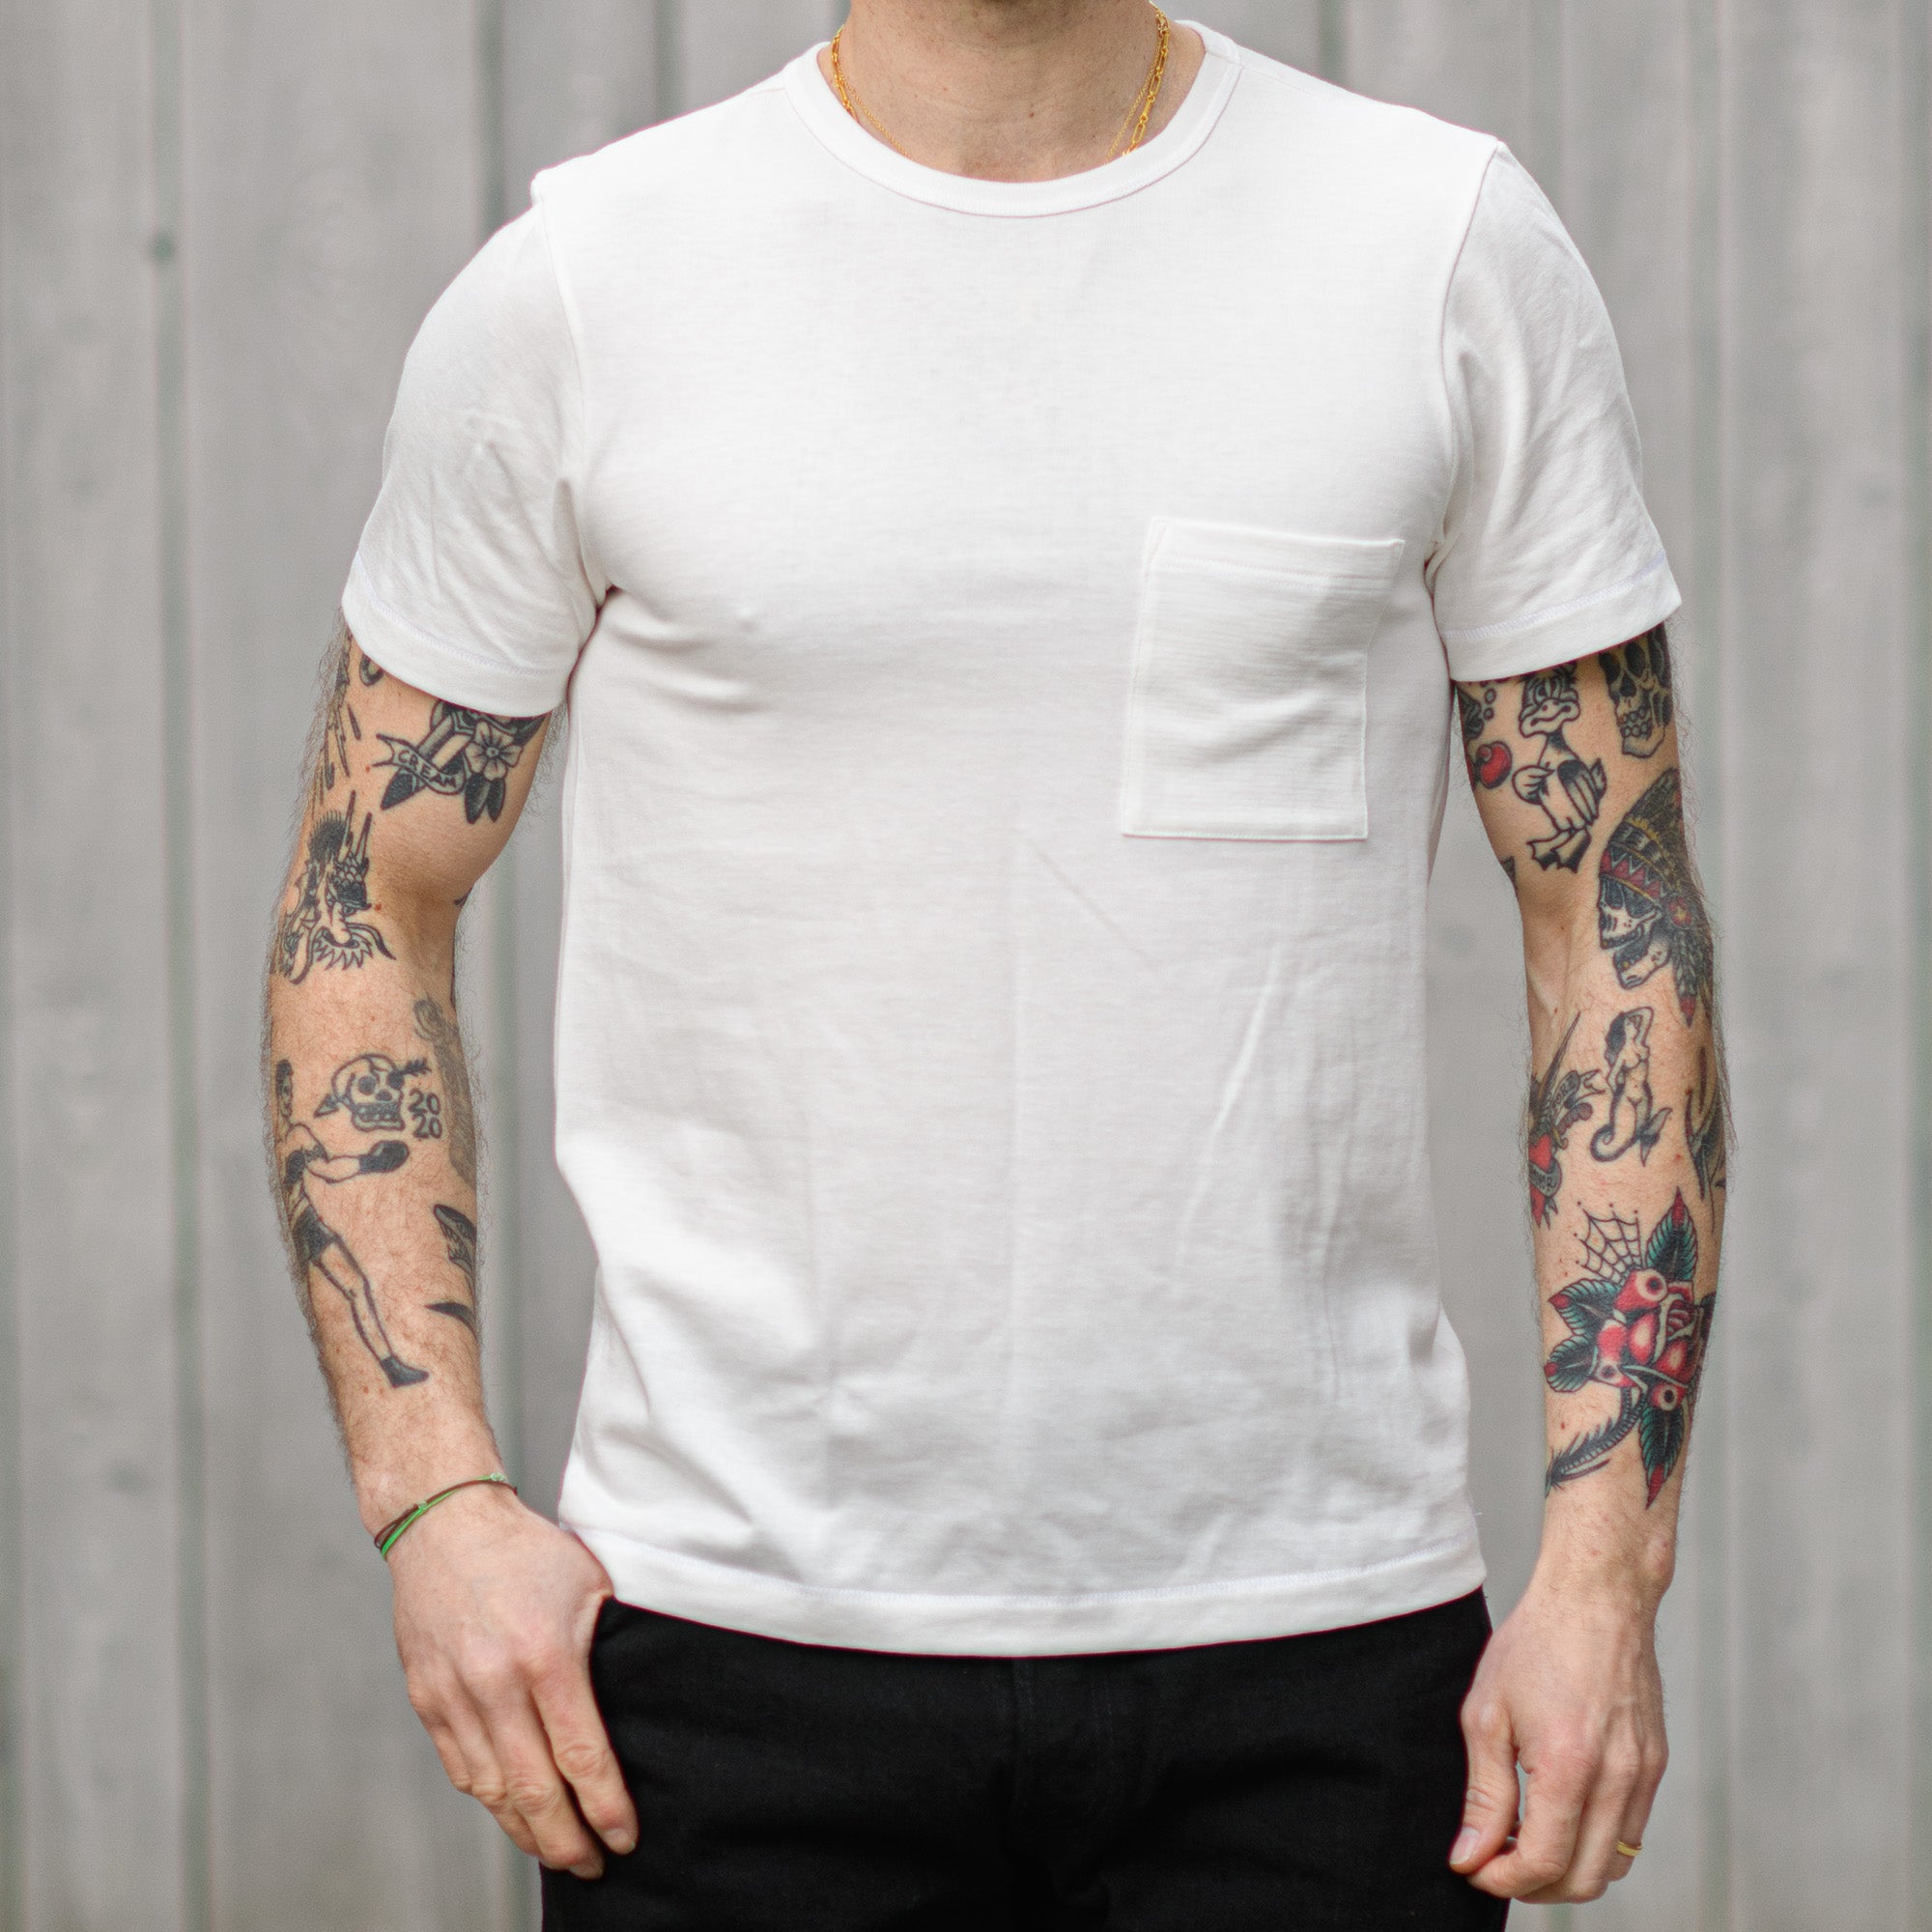 Merz b Schwanen 215 – Limited Edition T-Shirt White (Europe) Pocket / Store Exclusive